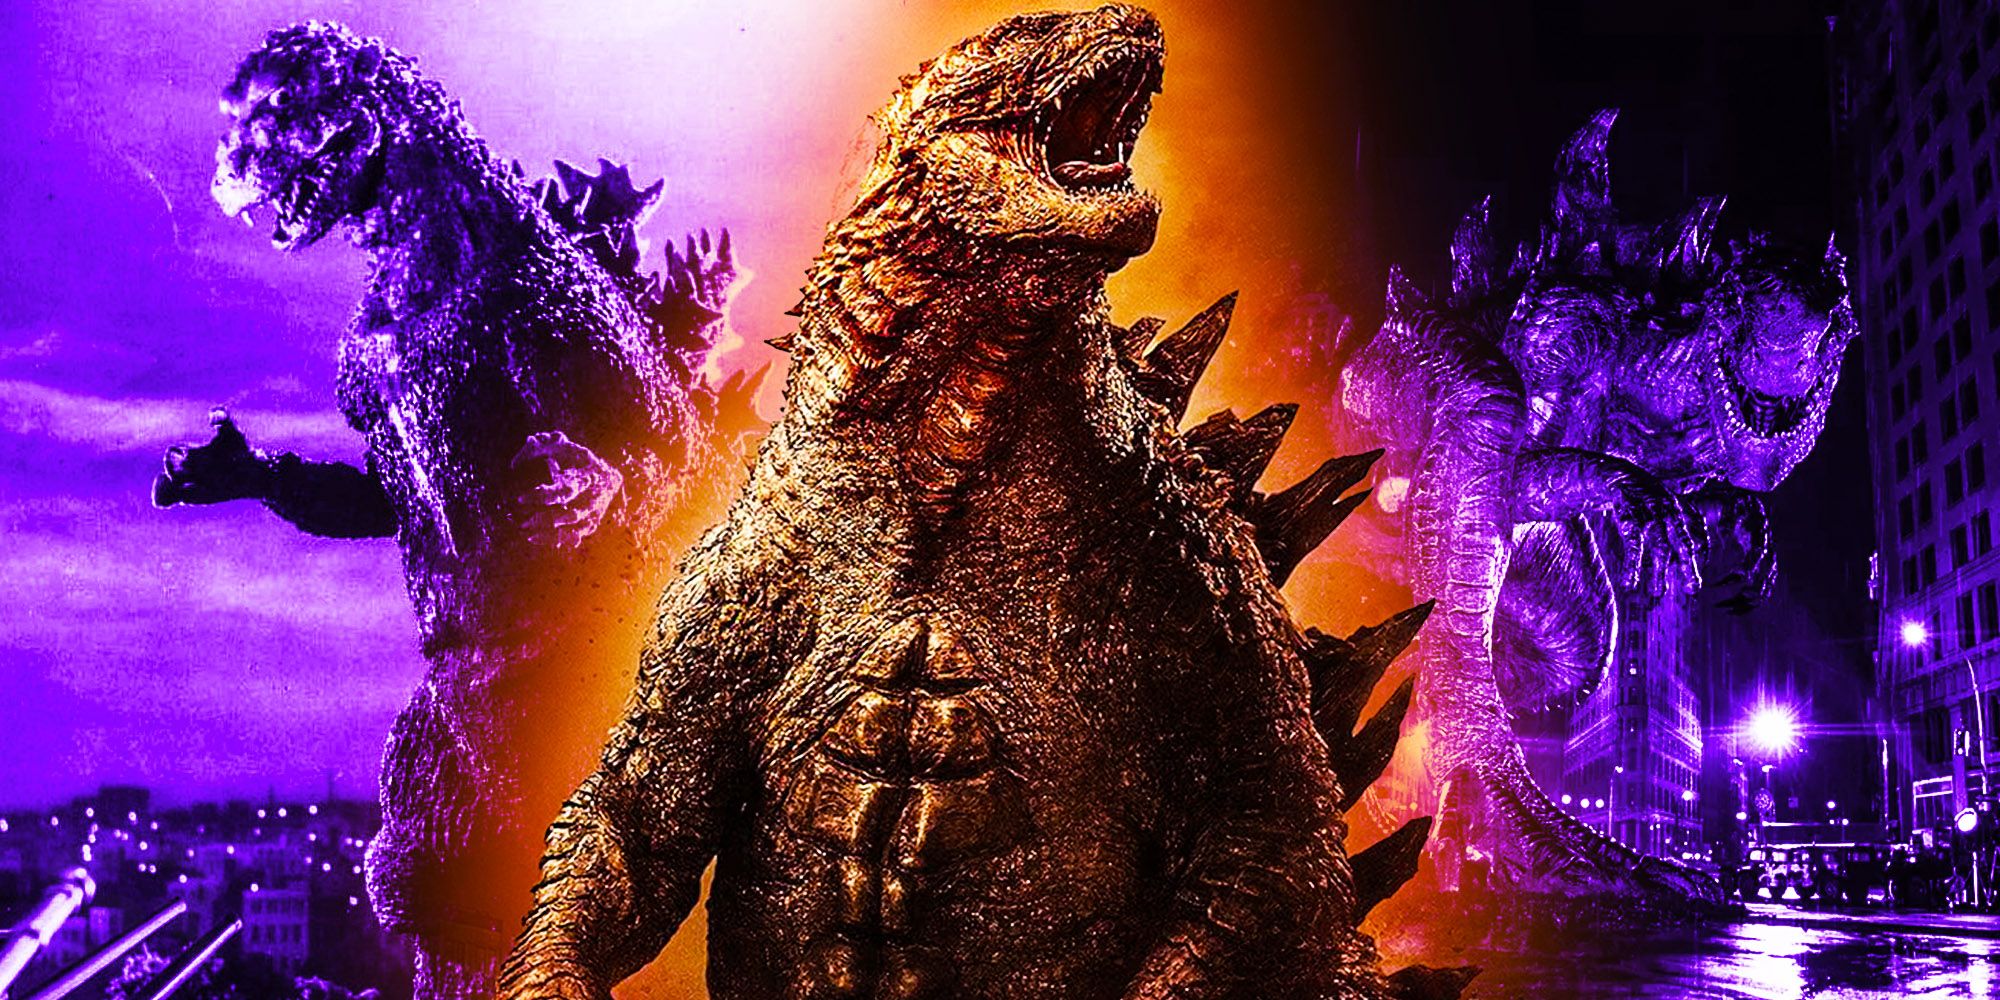 Godzilla 1954 Godzilla 1998 godzilla